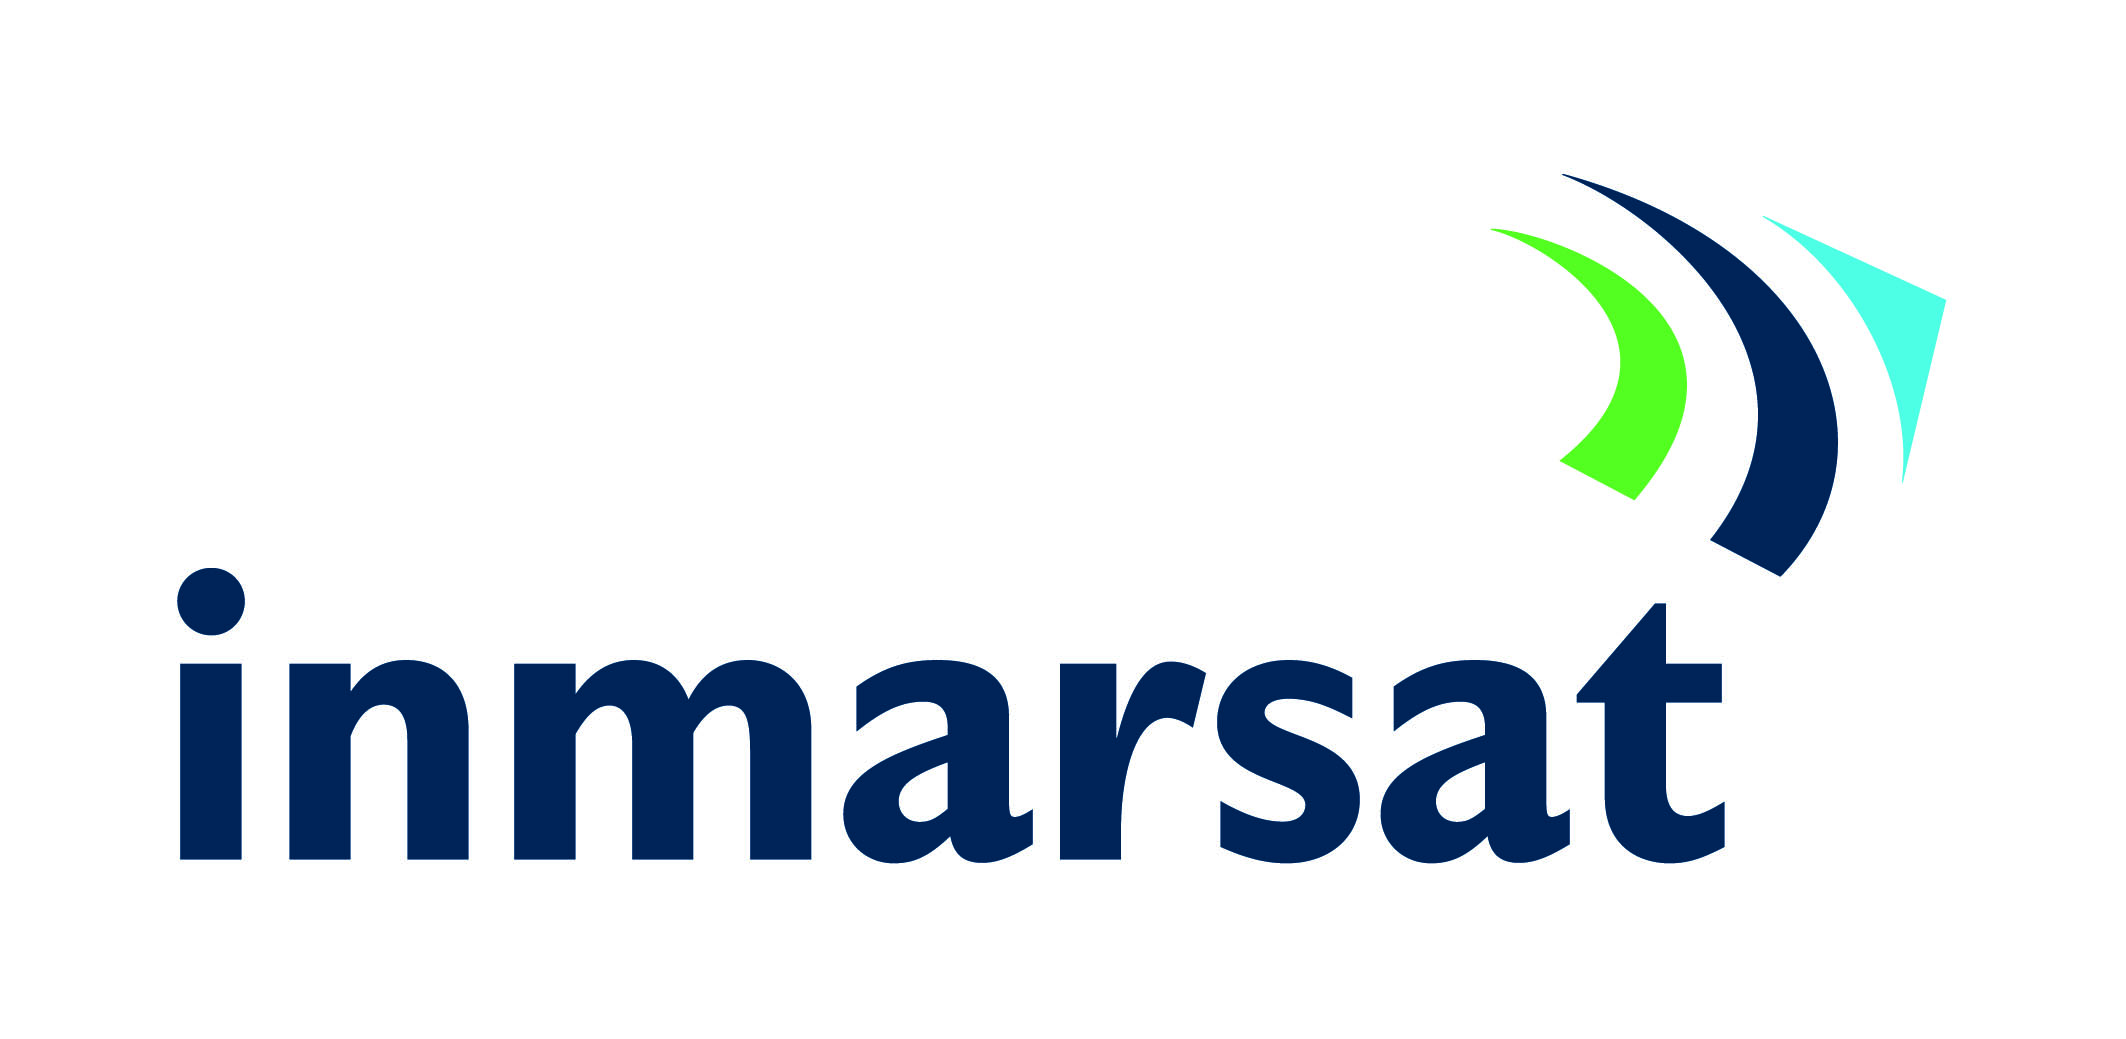 Inmarsat Logo Sml